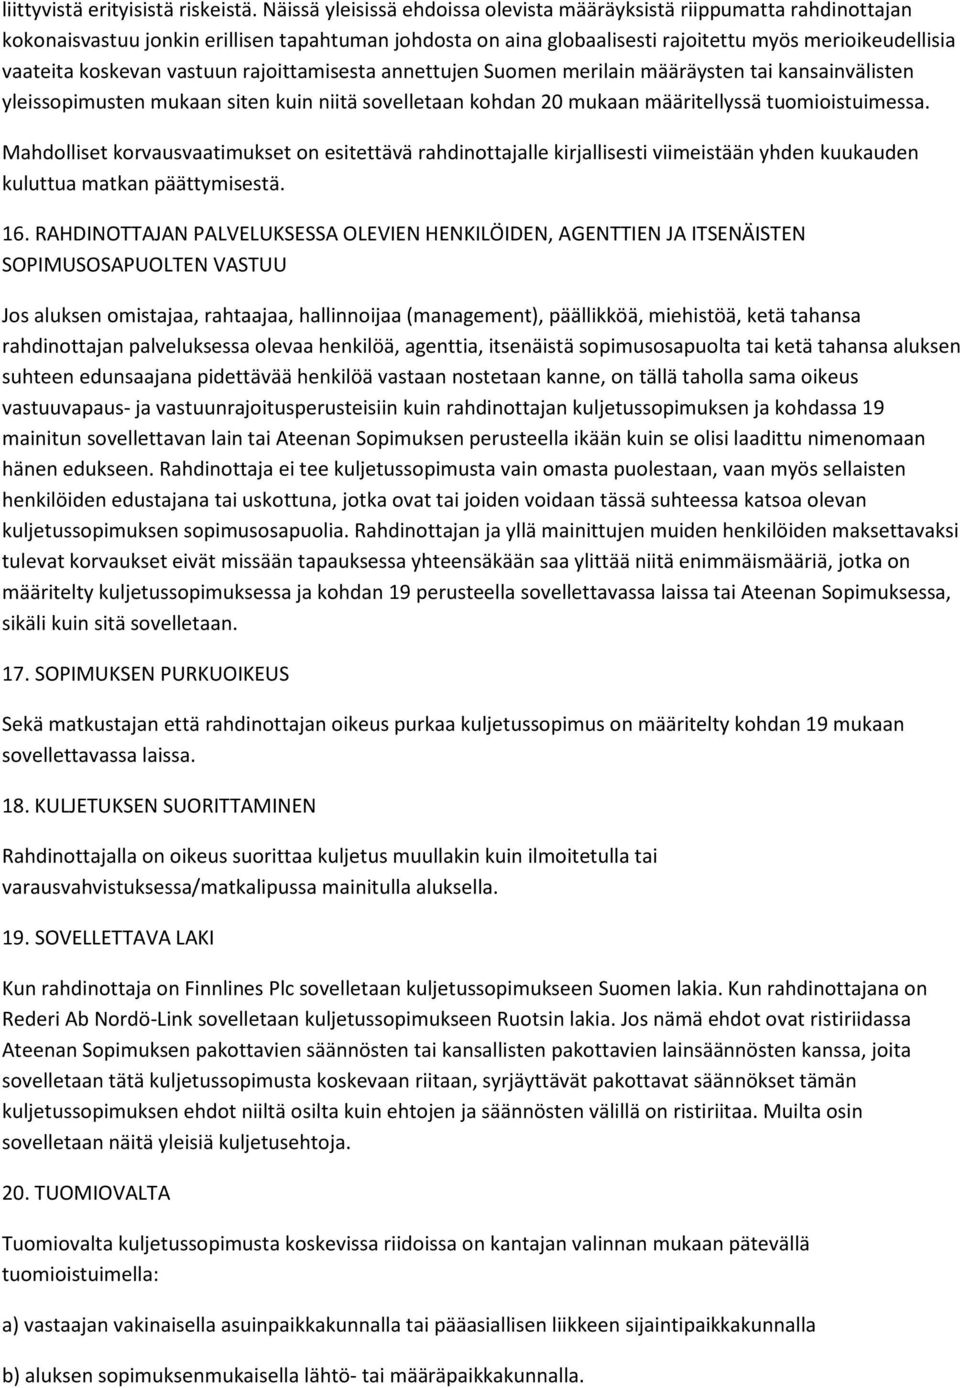 vastuun rajoittamisesta annettujen Suomen merilain määräysten tai kansainvälisten yleissopimusten mukaan siten kuin niitä sovelletaan kohdan 20 mukaan määritellyssä tuomioistuimessa.